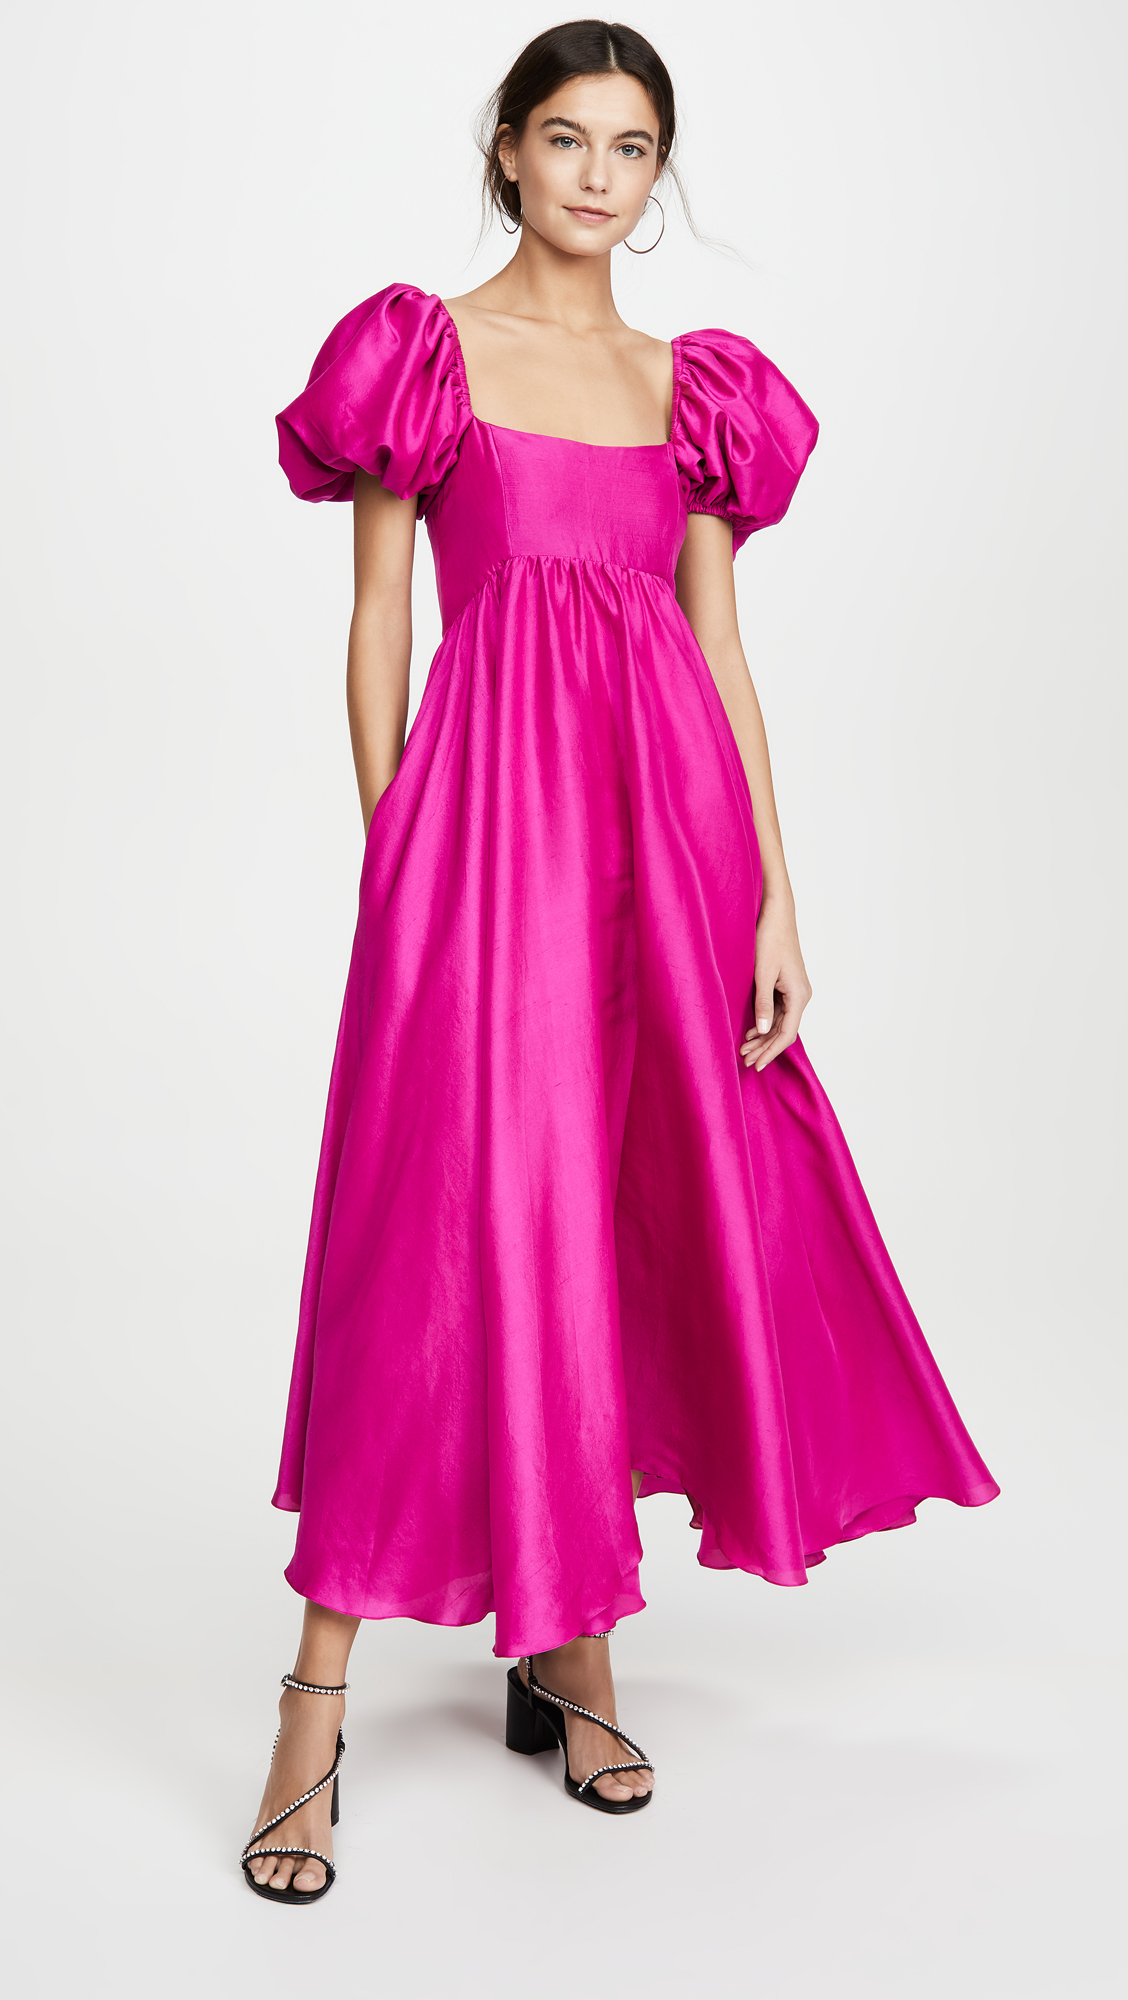 30 розовых свадебных платьев